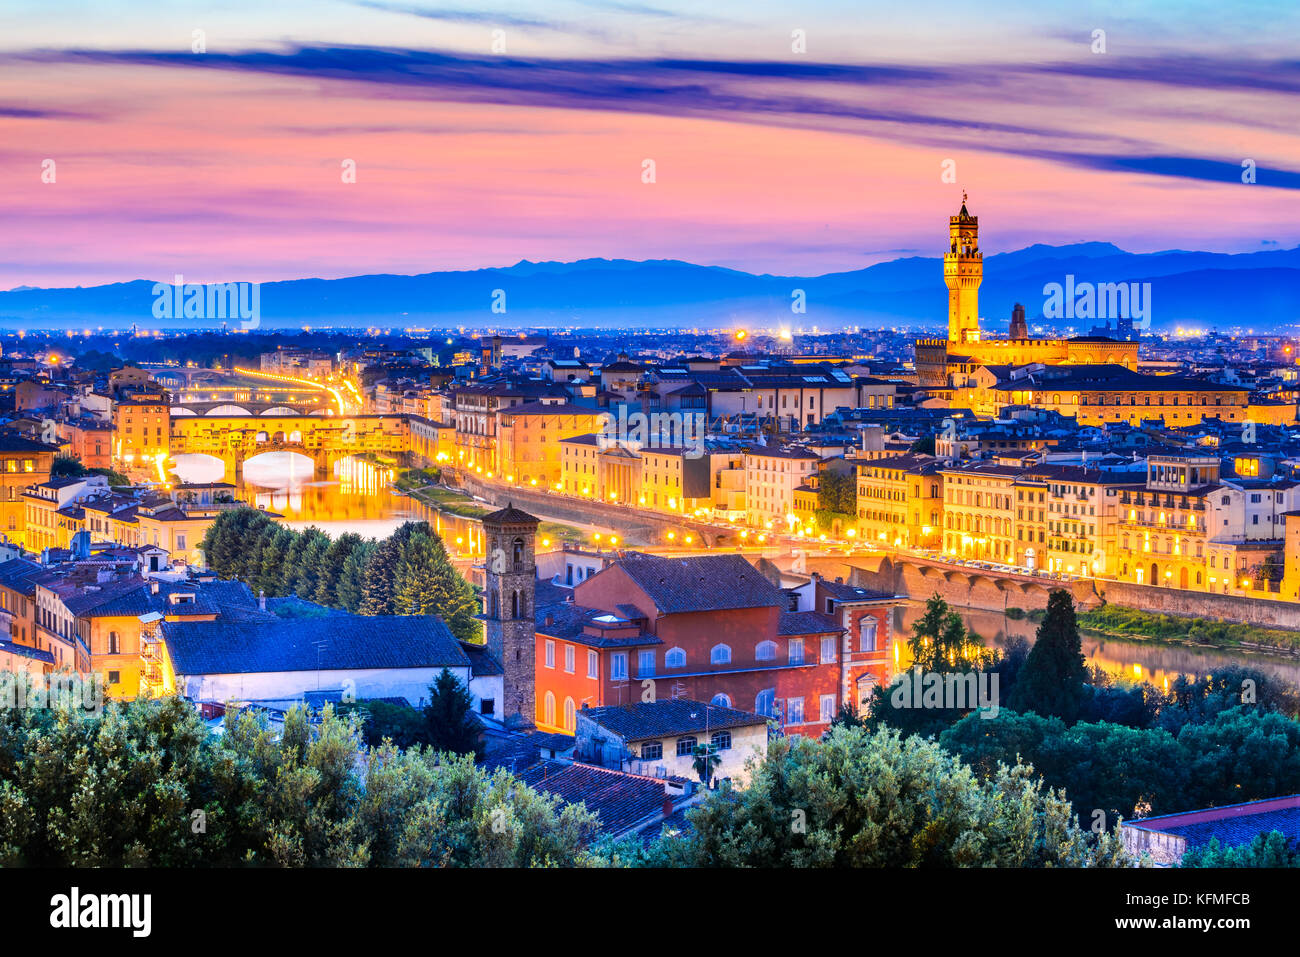 Florenz, Toskana - Nacht Landschaft Arno und Palazzo Vecchio, Architektur der Renaissance in Italien. Stockfoto